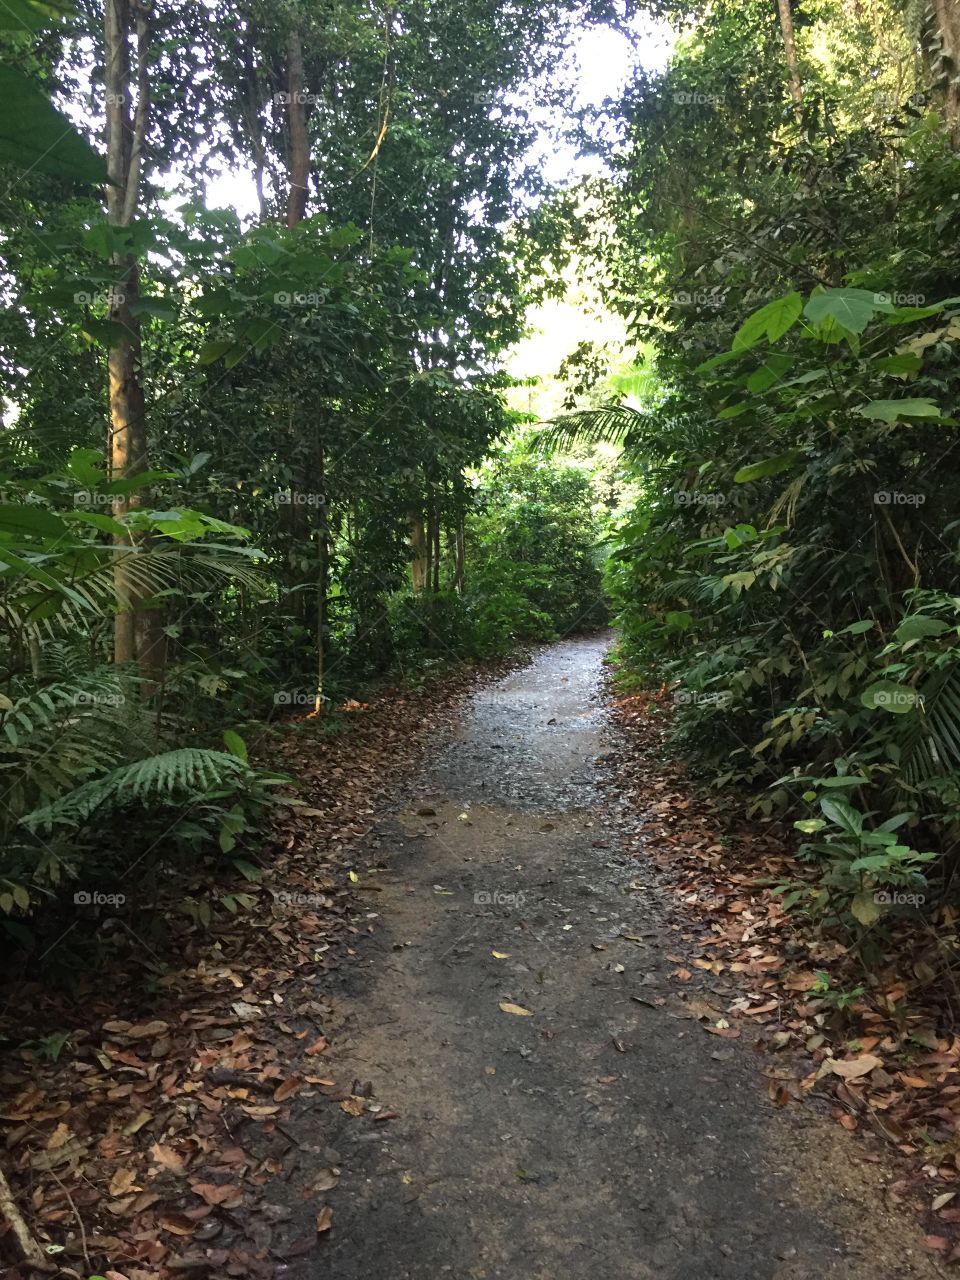 Jungle trail at McRitchie reservoir park, S’pore